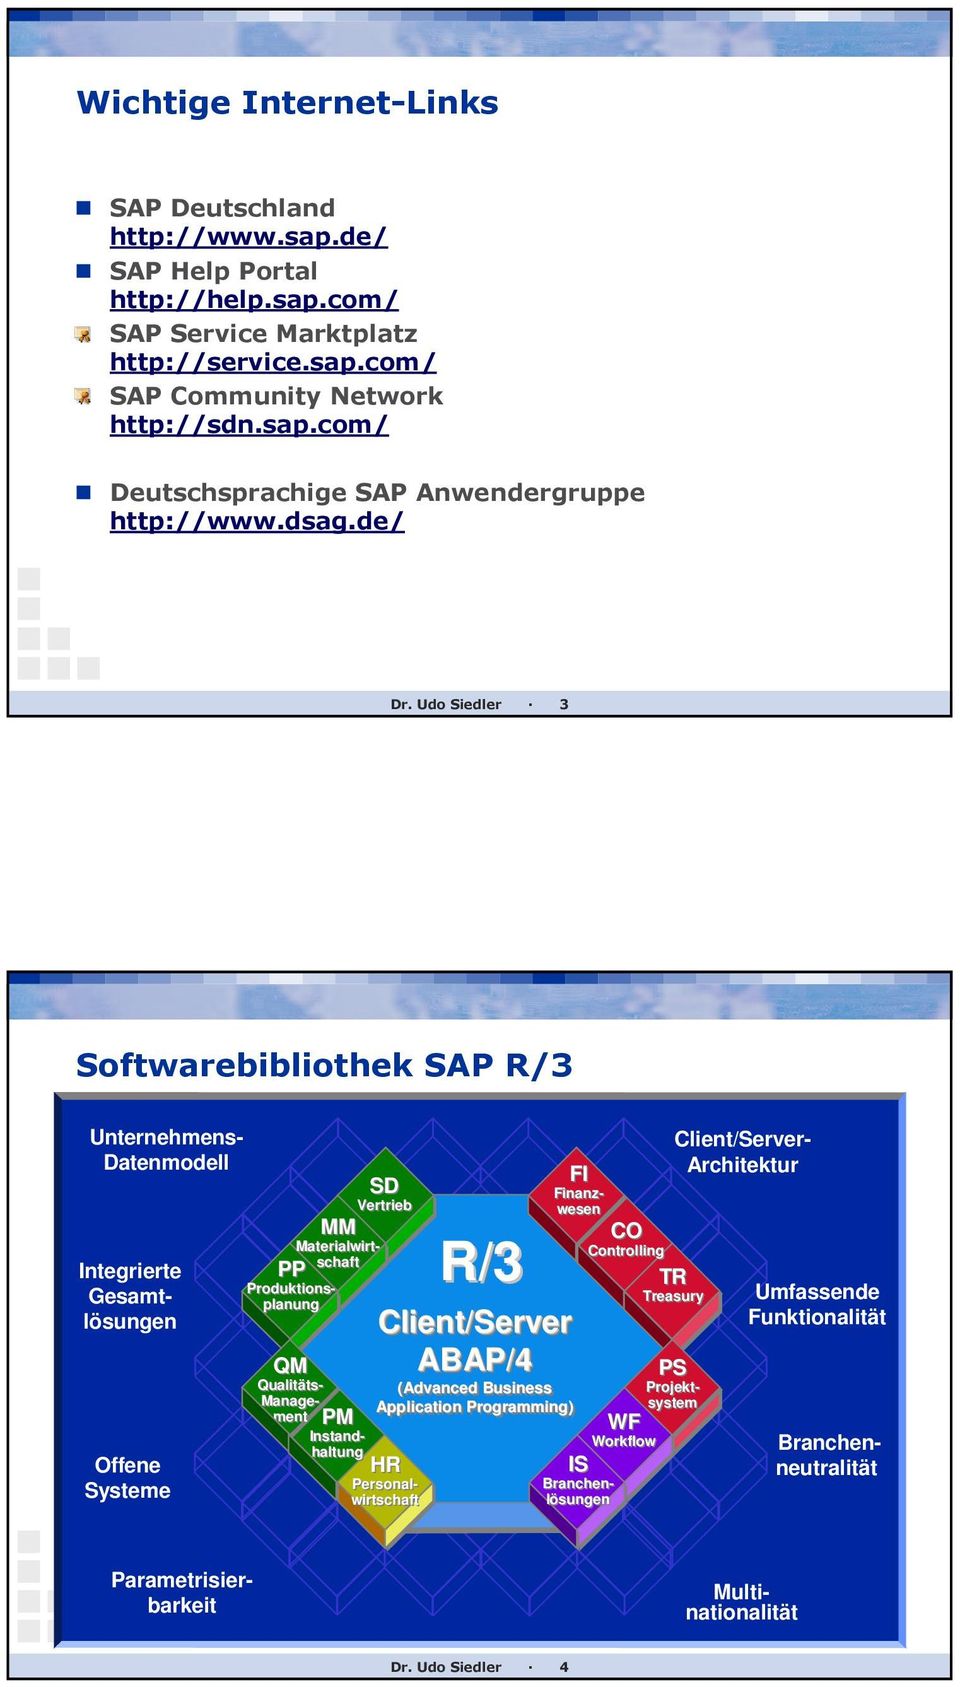 Udo Siedler 3 Softwarebibliothek SAP R/3 Unternehmens- Datenmodell Offene Systeme MM SD Vertrieb PP QM Personalwirtschaft Produktionsplanung Qualitäts- Management PM Instandhaltung R/3 FI